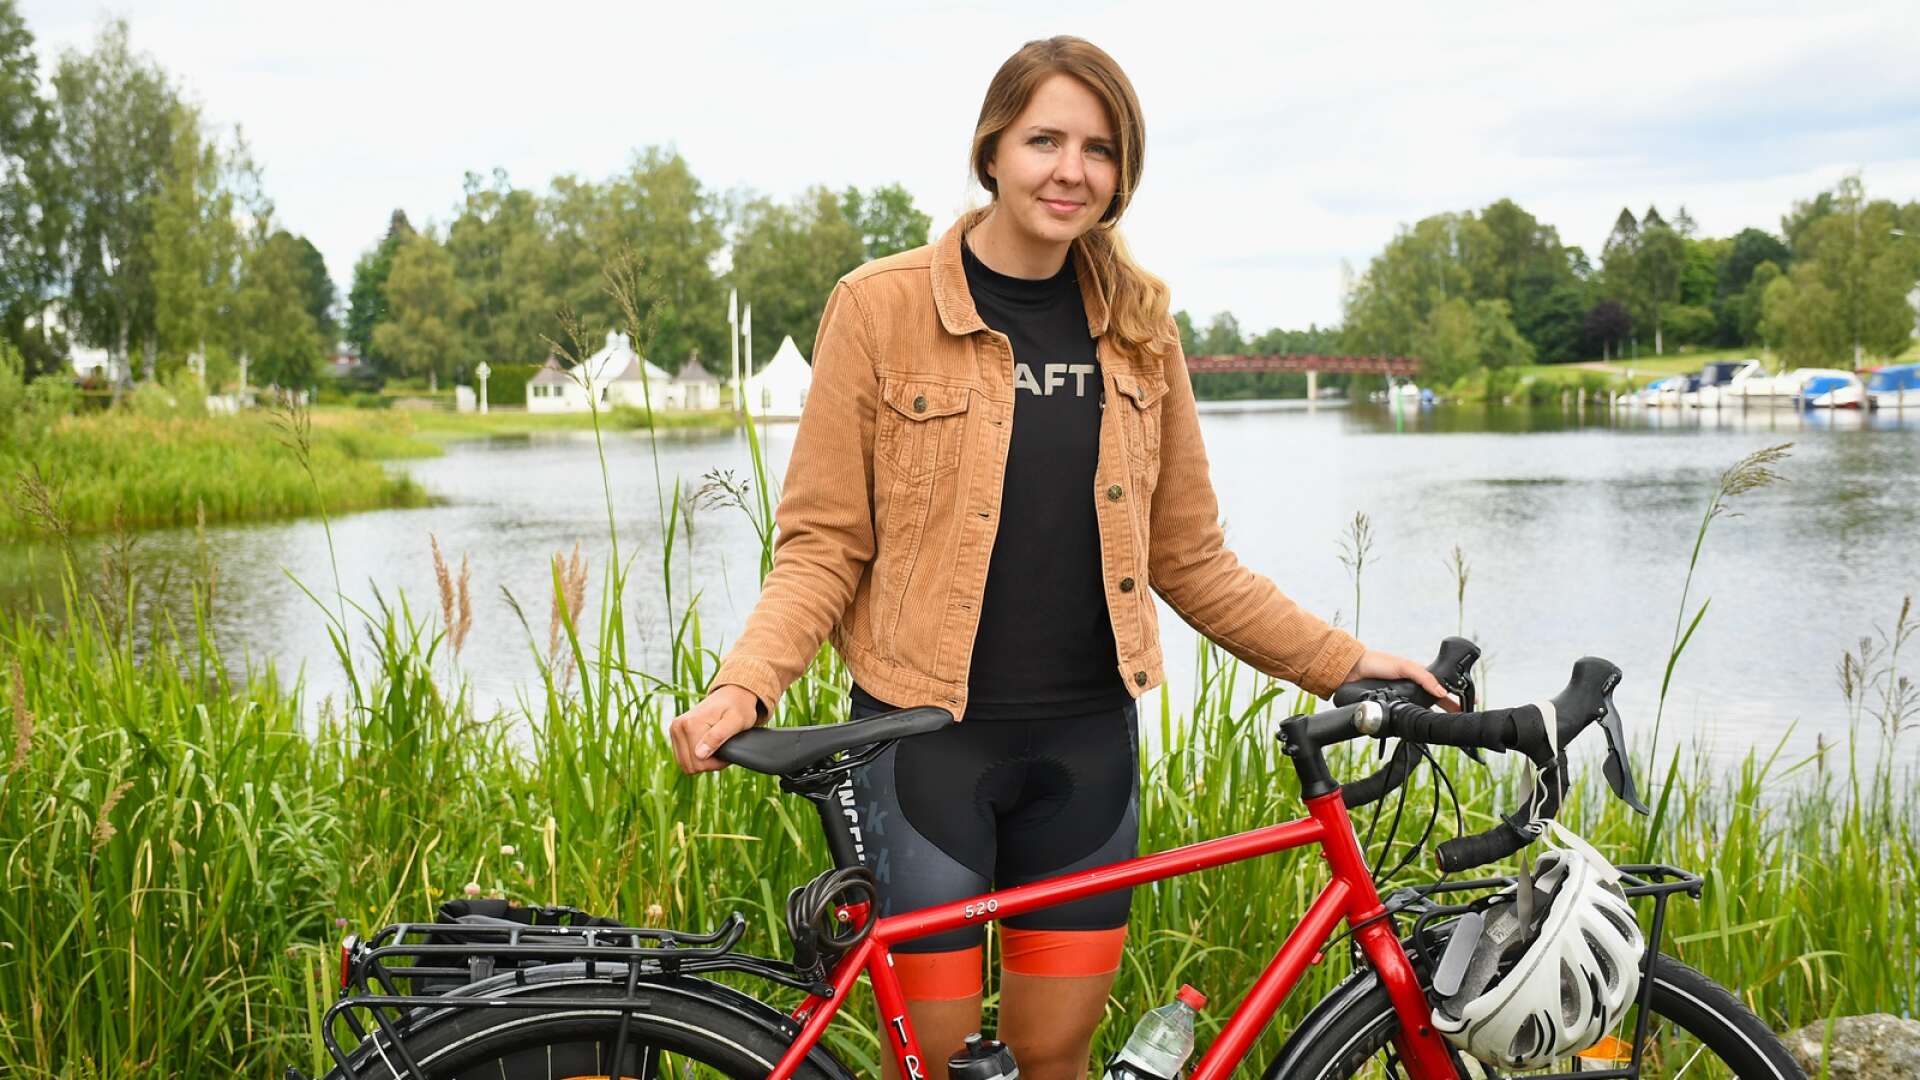 Johanna Holmblad cyklade 145 mil på 15 dagar, från Abisko till Gräsmark. I tisdags träffade FB henne där hon dök upp i Sunne - på cykel naturligtvis.